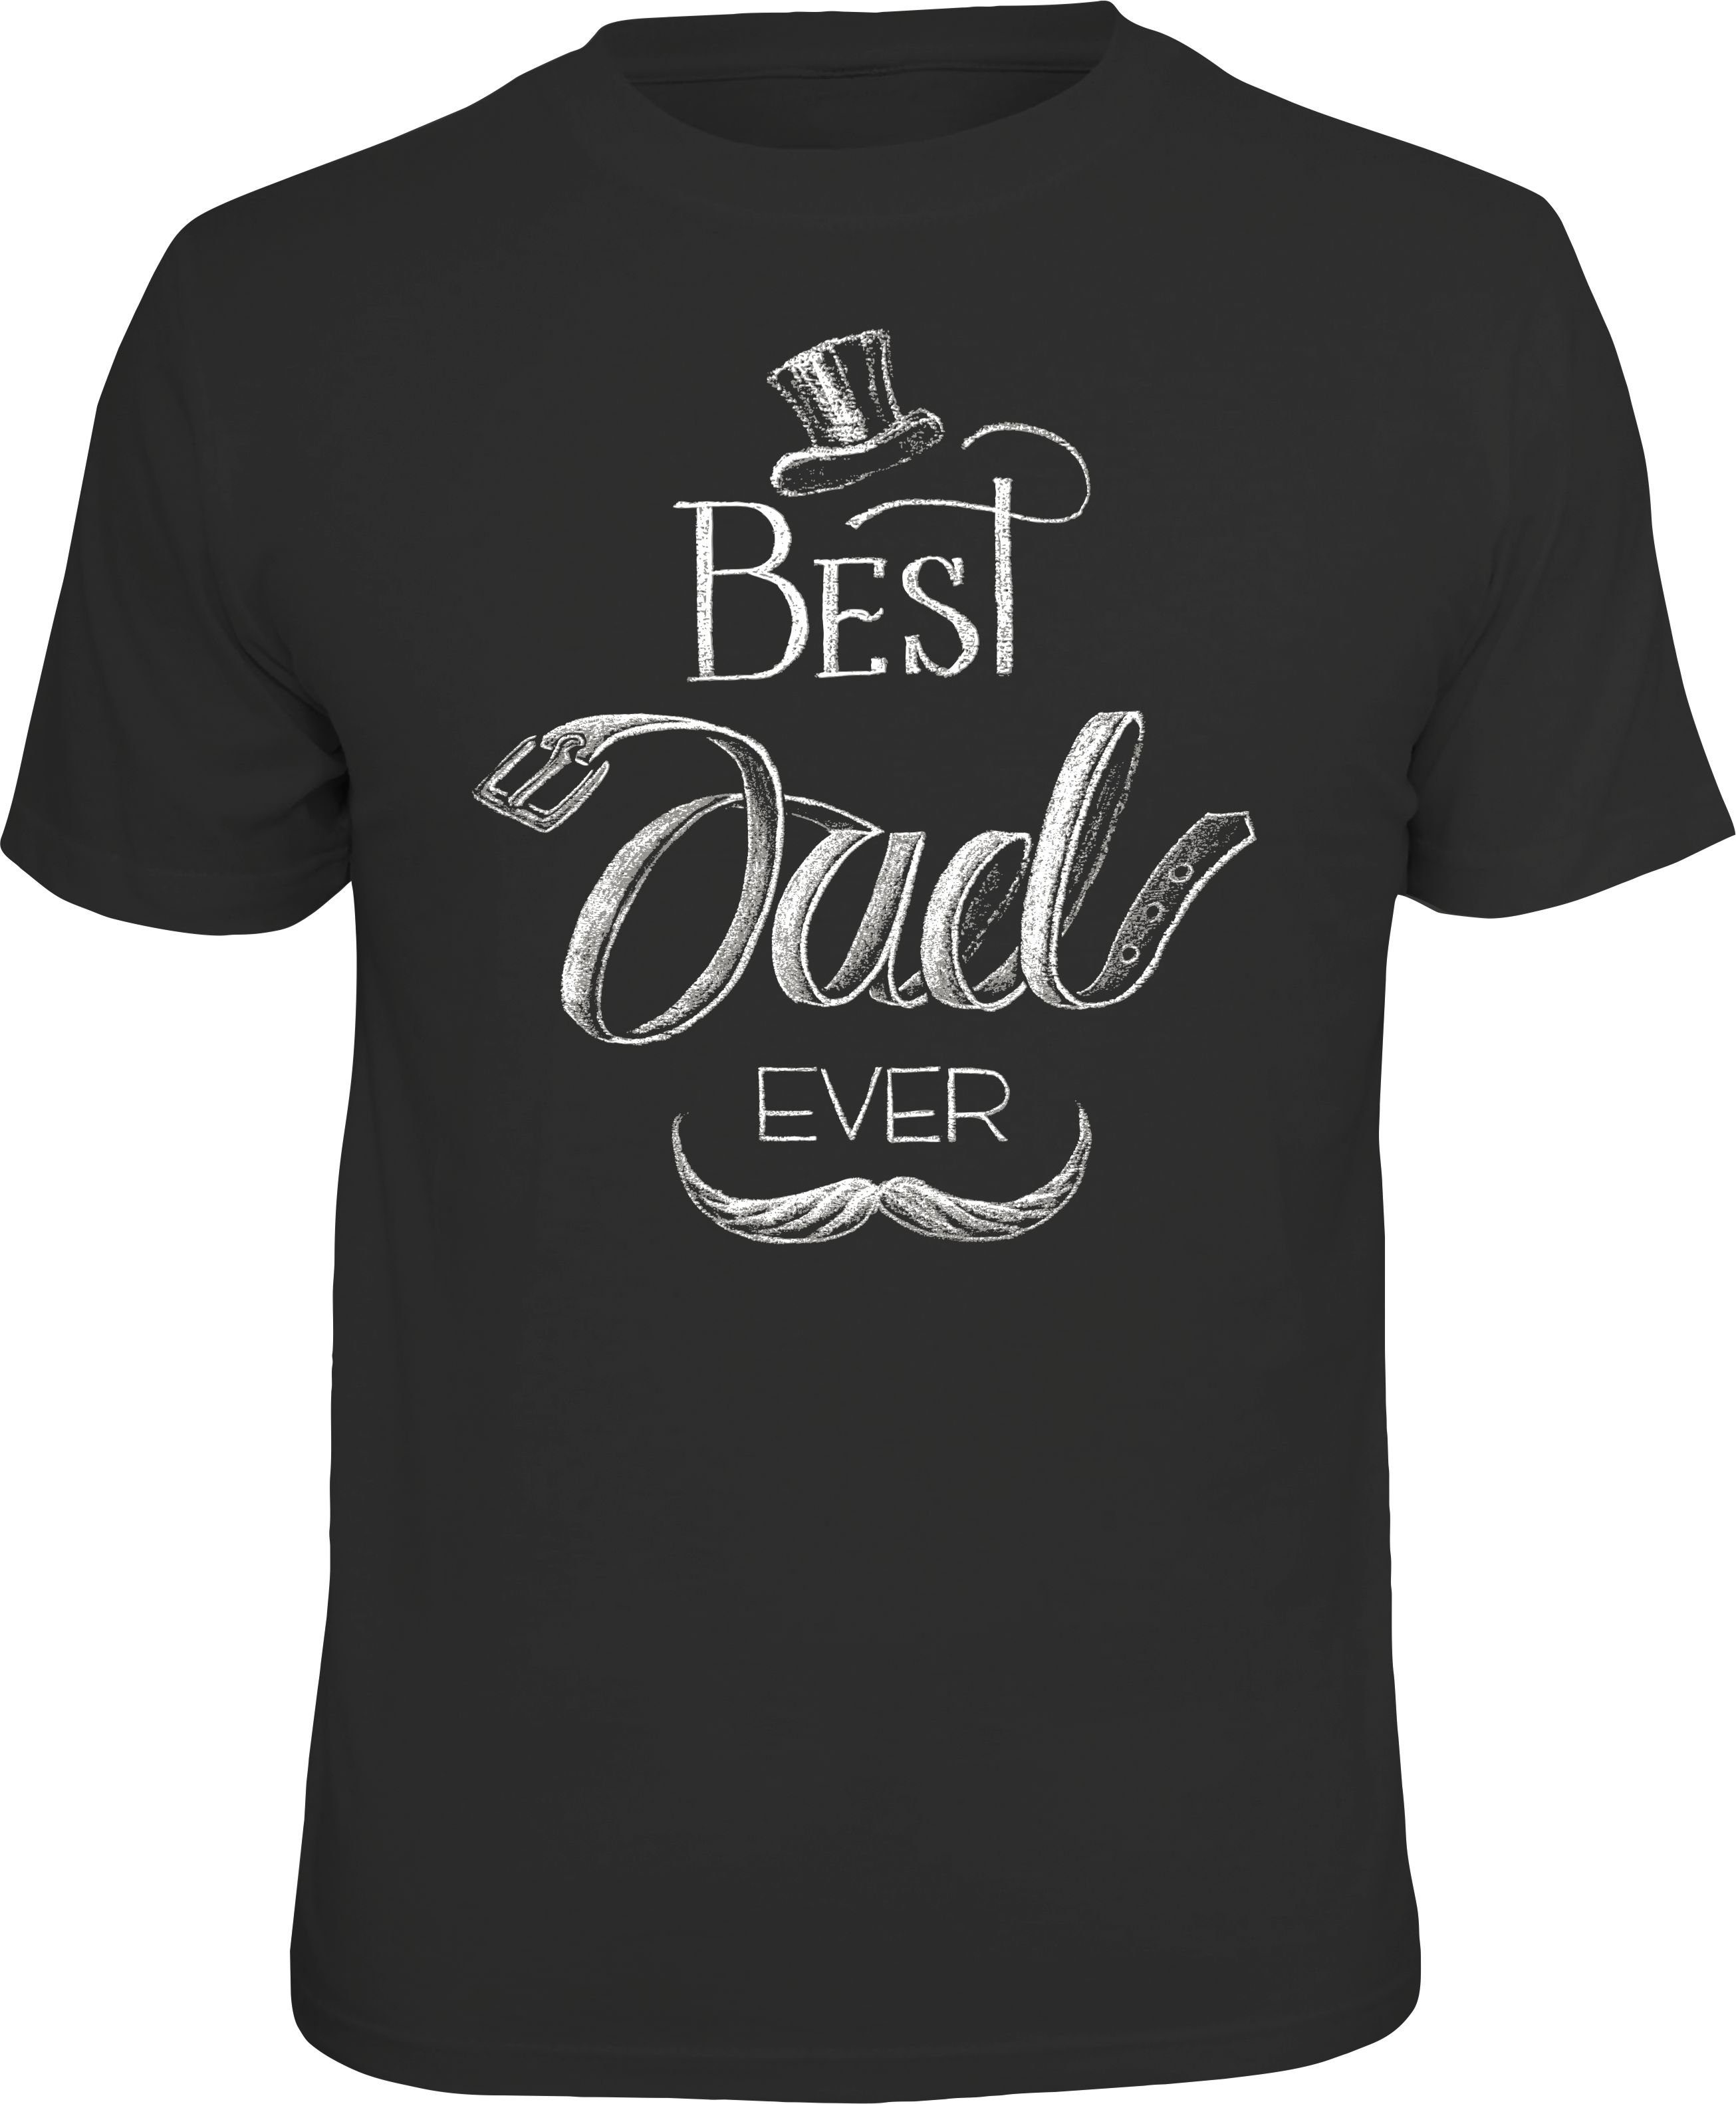 Rahmenlos T-Shirt Das Geschenk für Väter - Best Dad Ever